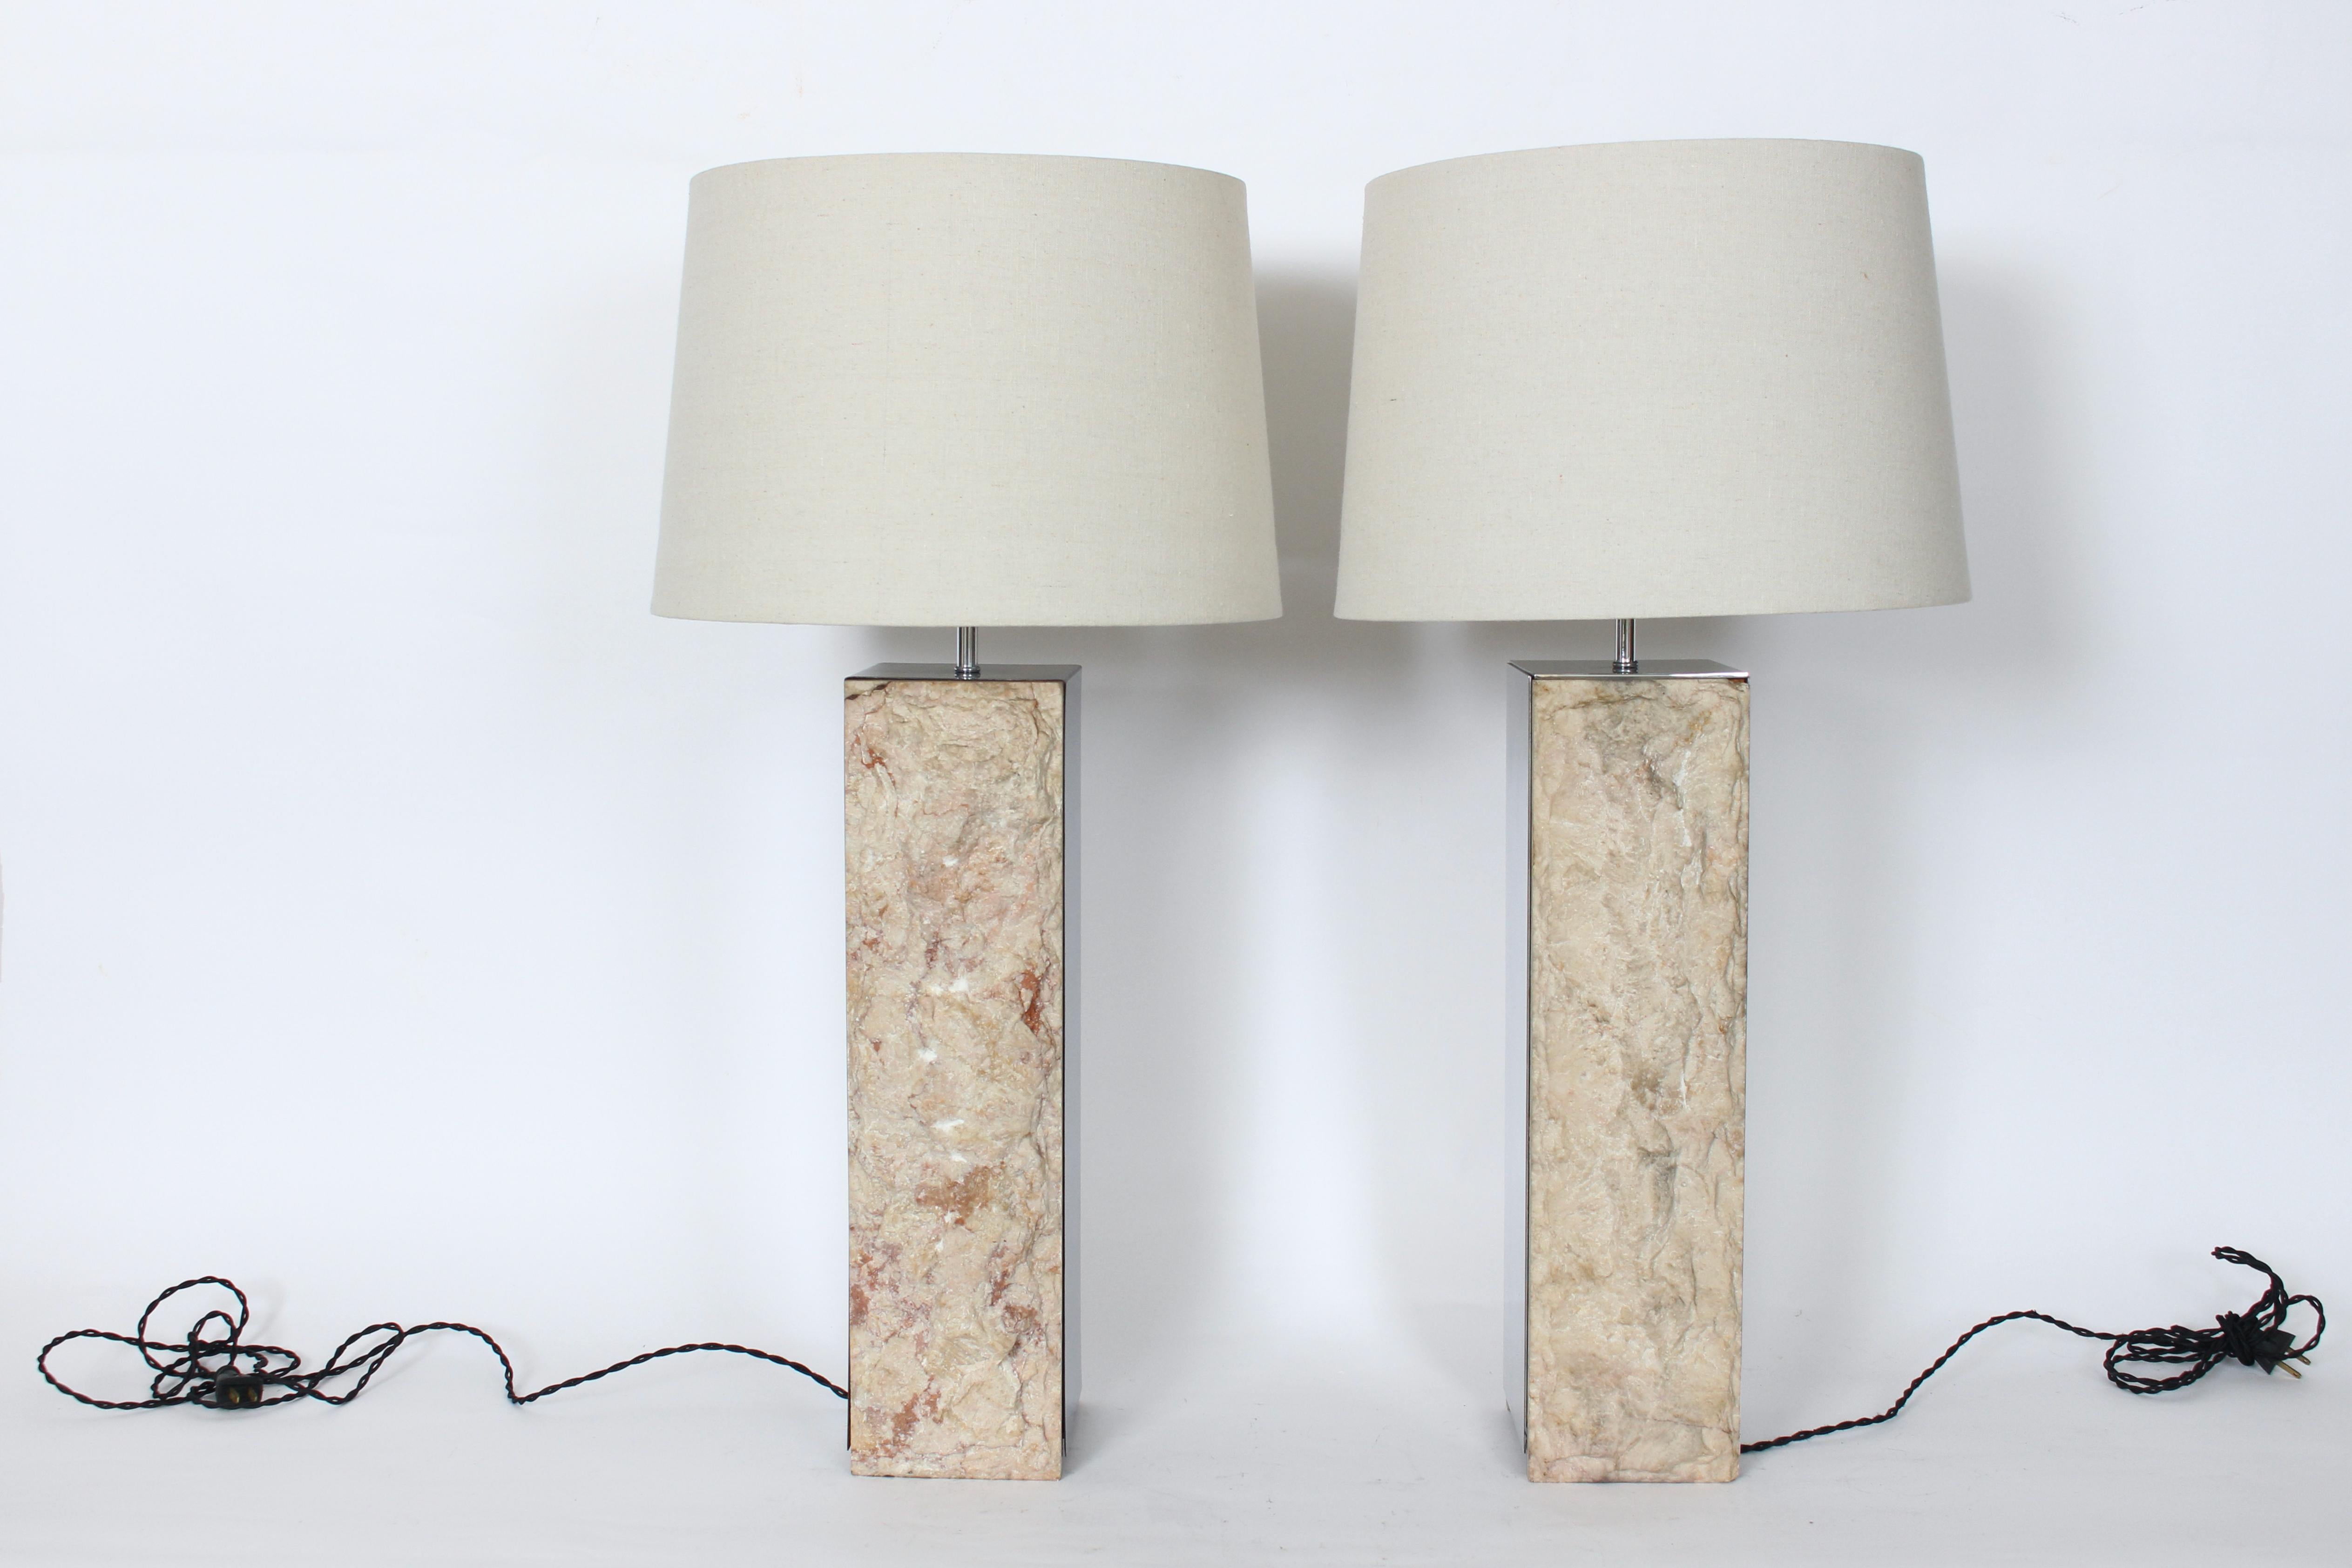 Paire de lampes de table en marbre brut et aluminium poli attribuées à Laurel Lamp Co.  Comprend deux panneaux à deux faces, dont deux en marbre italien crème, beige, taupe avec des touches de rose, et deux panneaux réfléchissants (18,5 H x 5 P) en